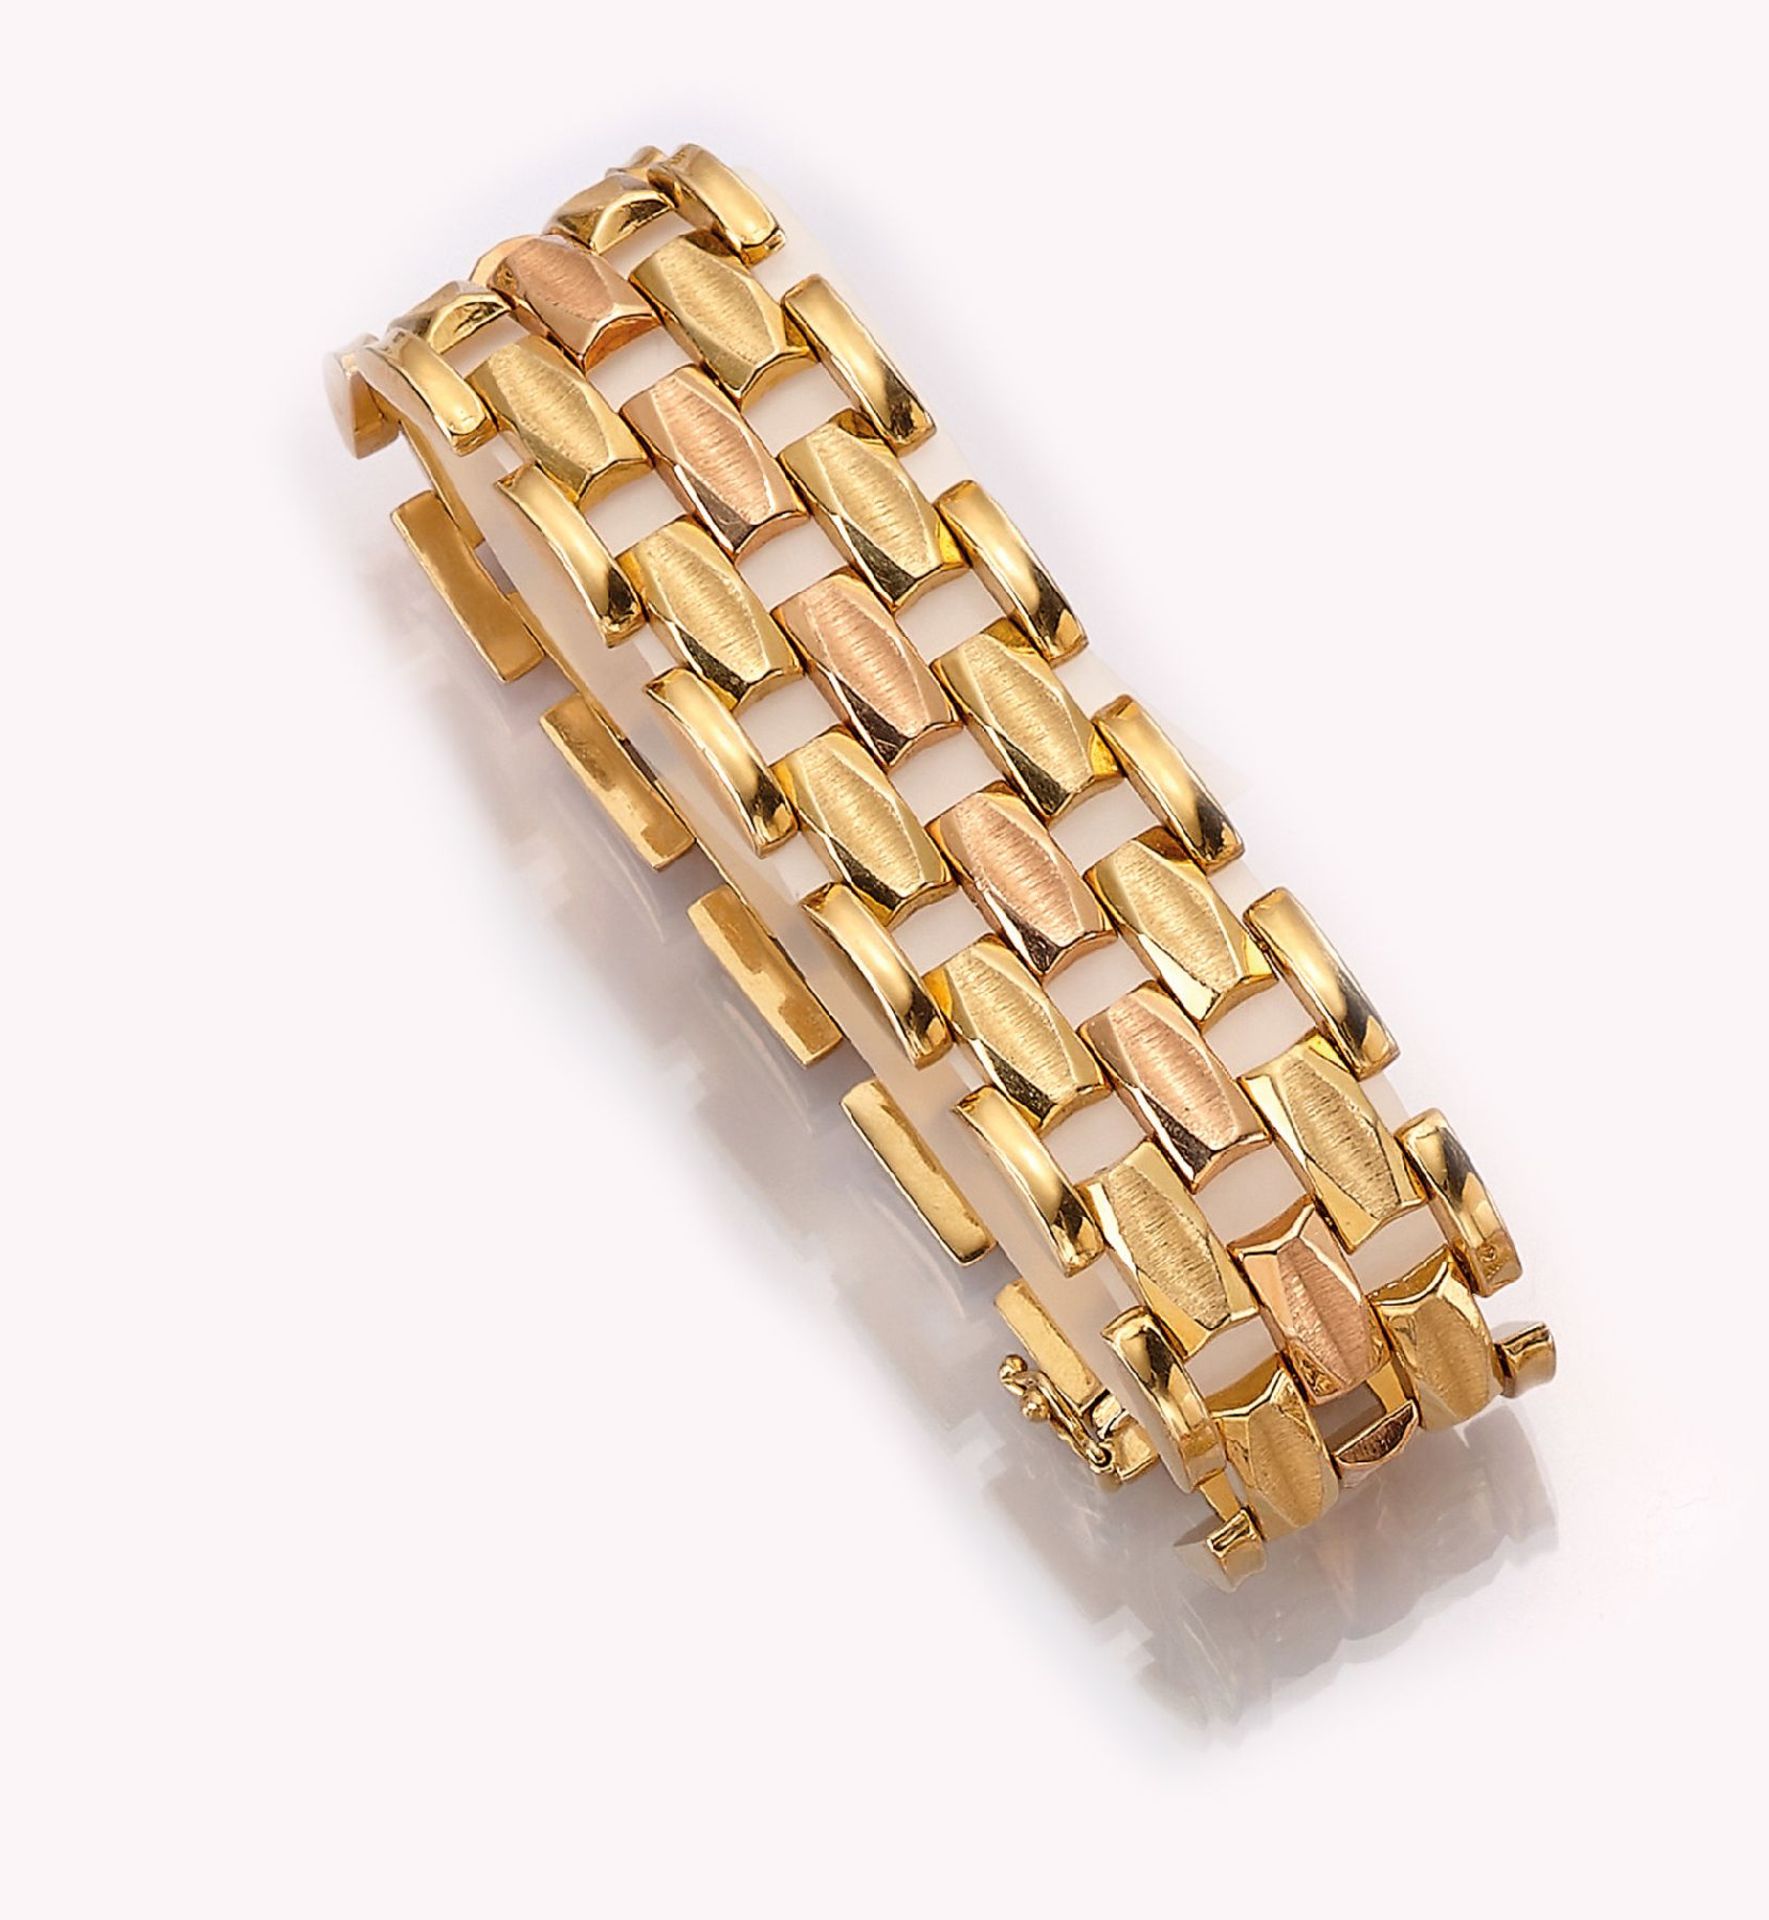 18 kt Gold Armband,   ca. 45 g, GG/RG 750/000, 1 Reihe in